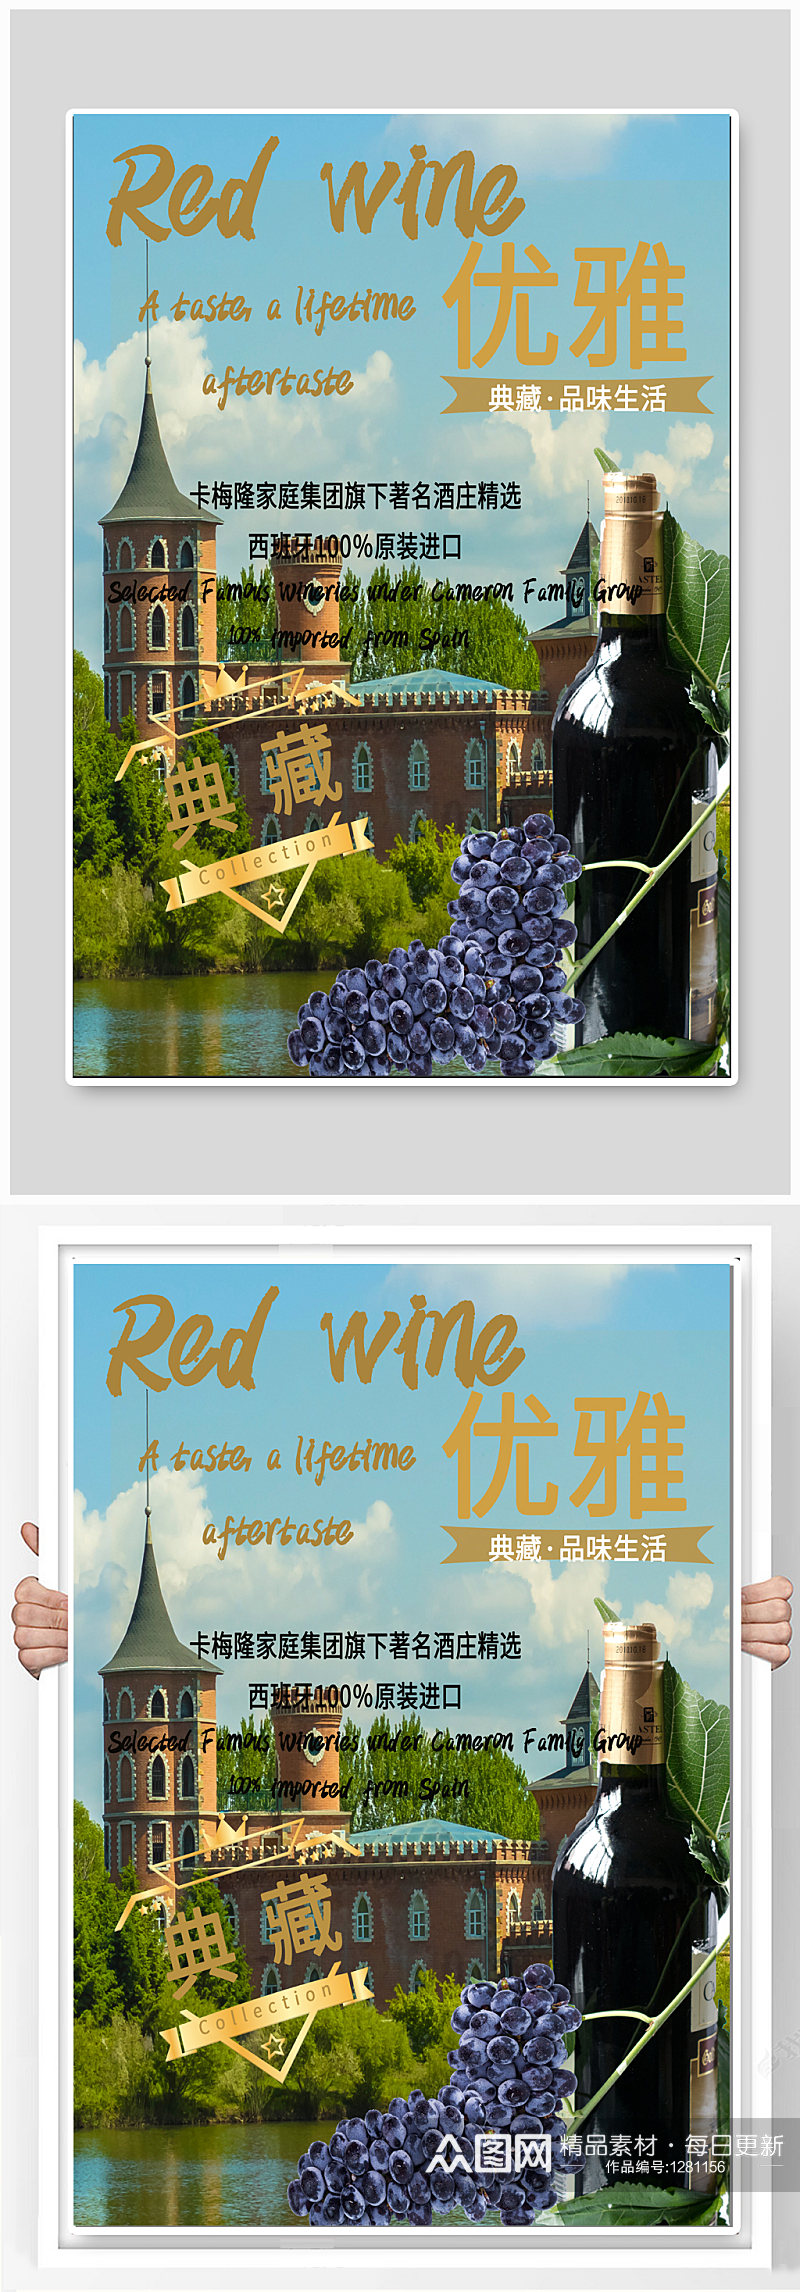 红酒酒庄宣传海报素材